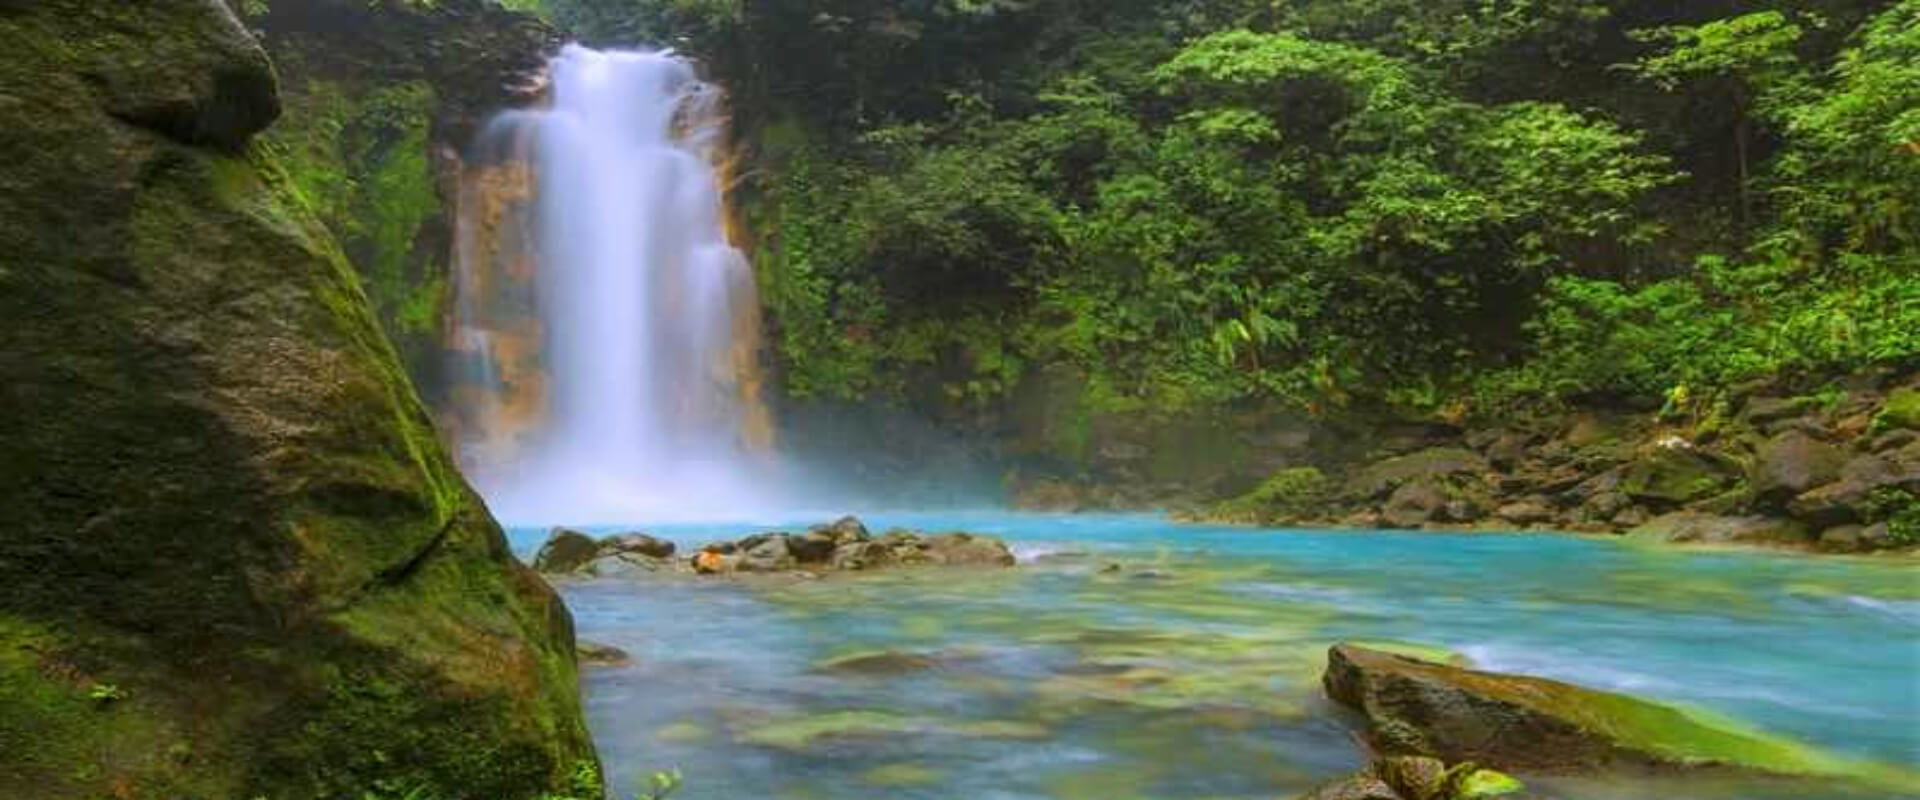 Caminata guiada al Parque Nacional Río Celeste | Costa Rica Jade Tours